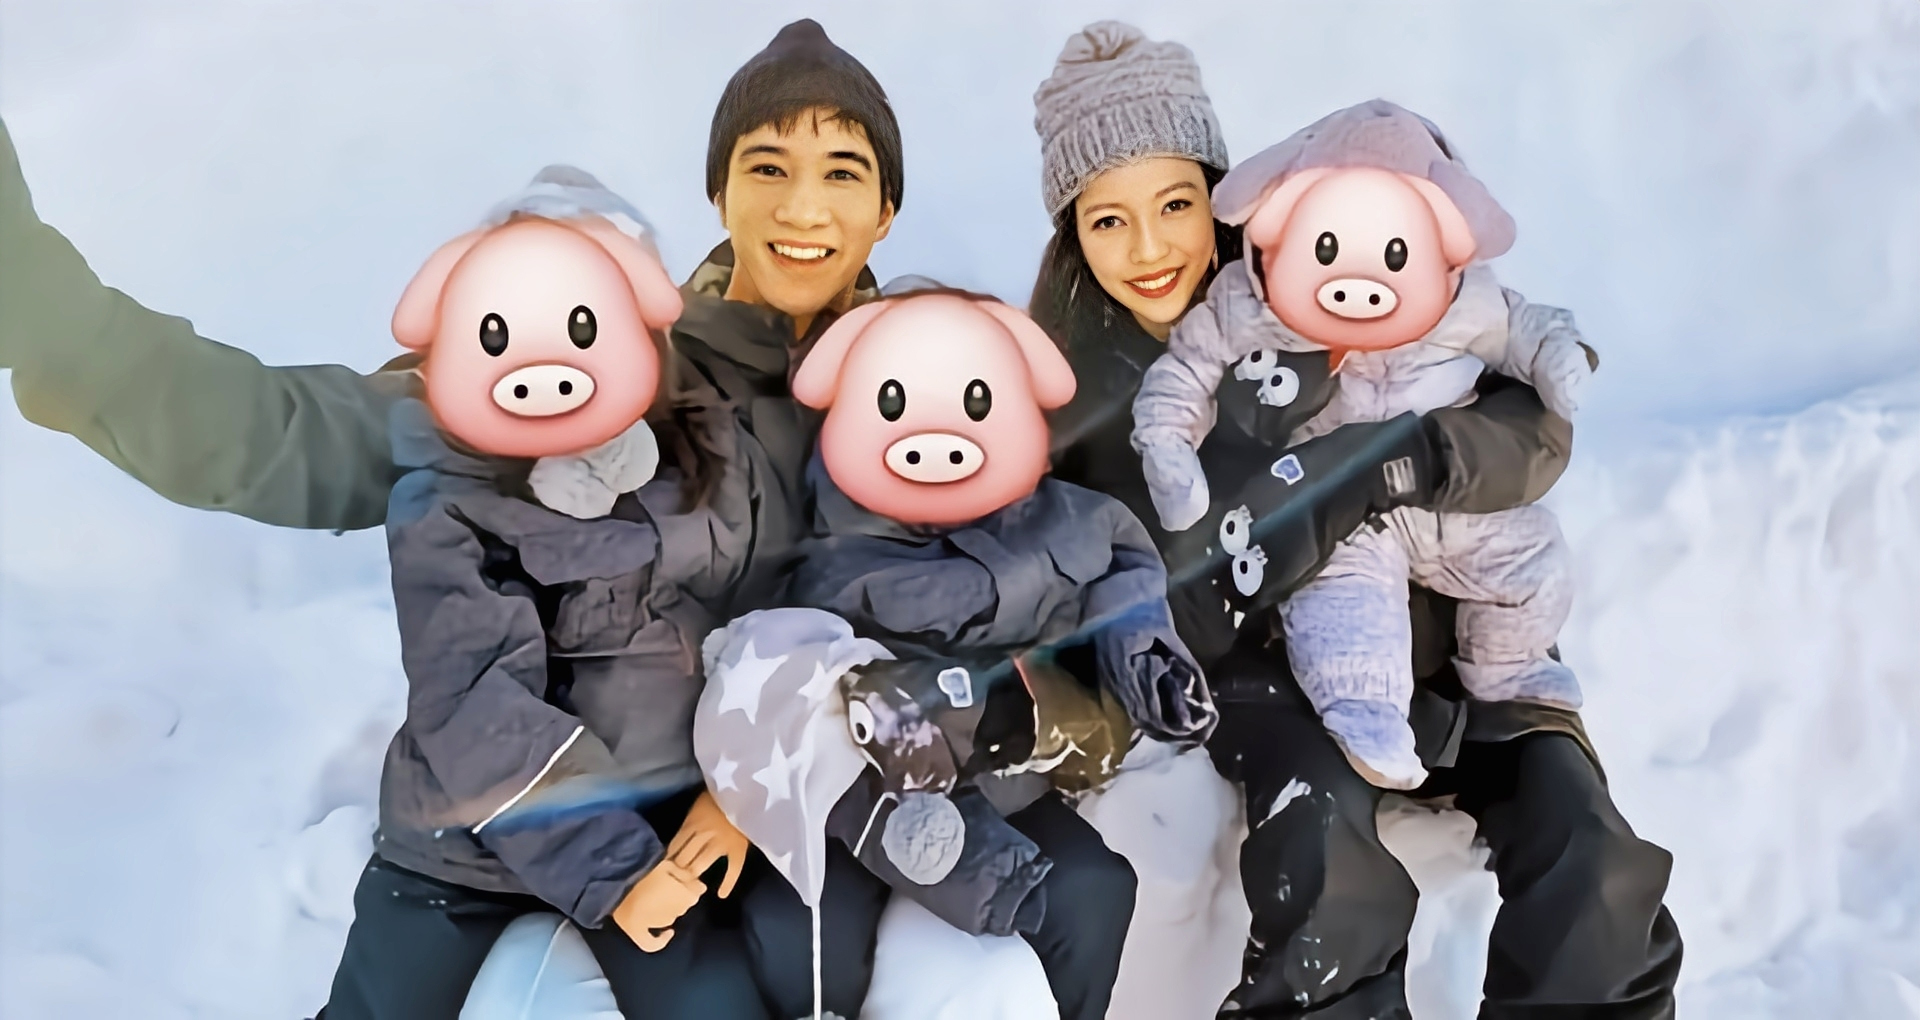 Leehom, Jinglei & their kids